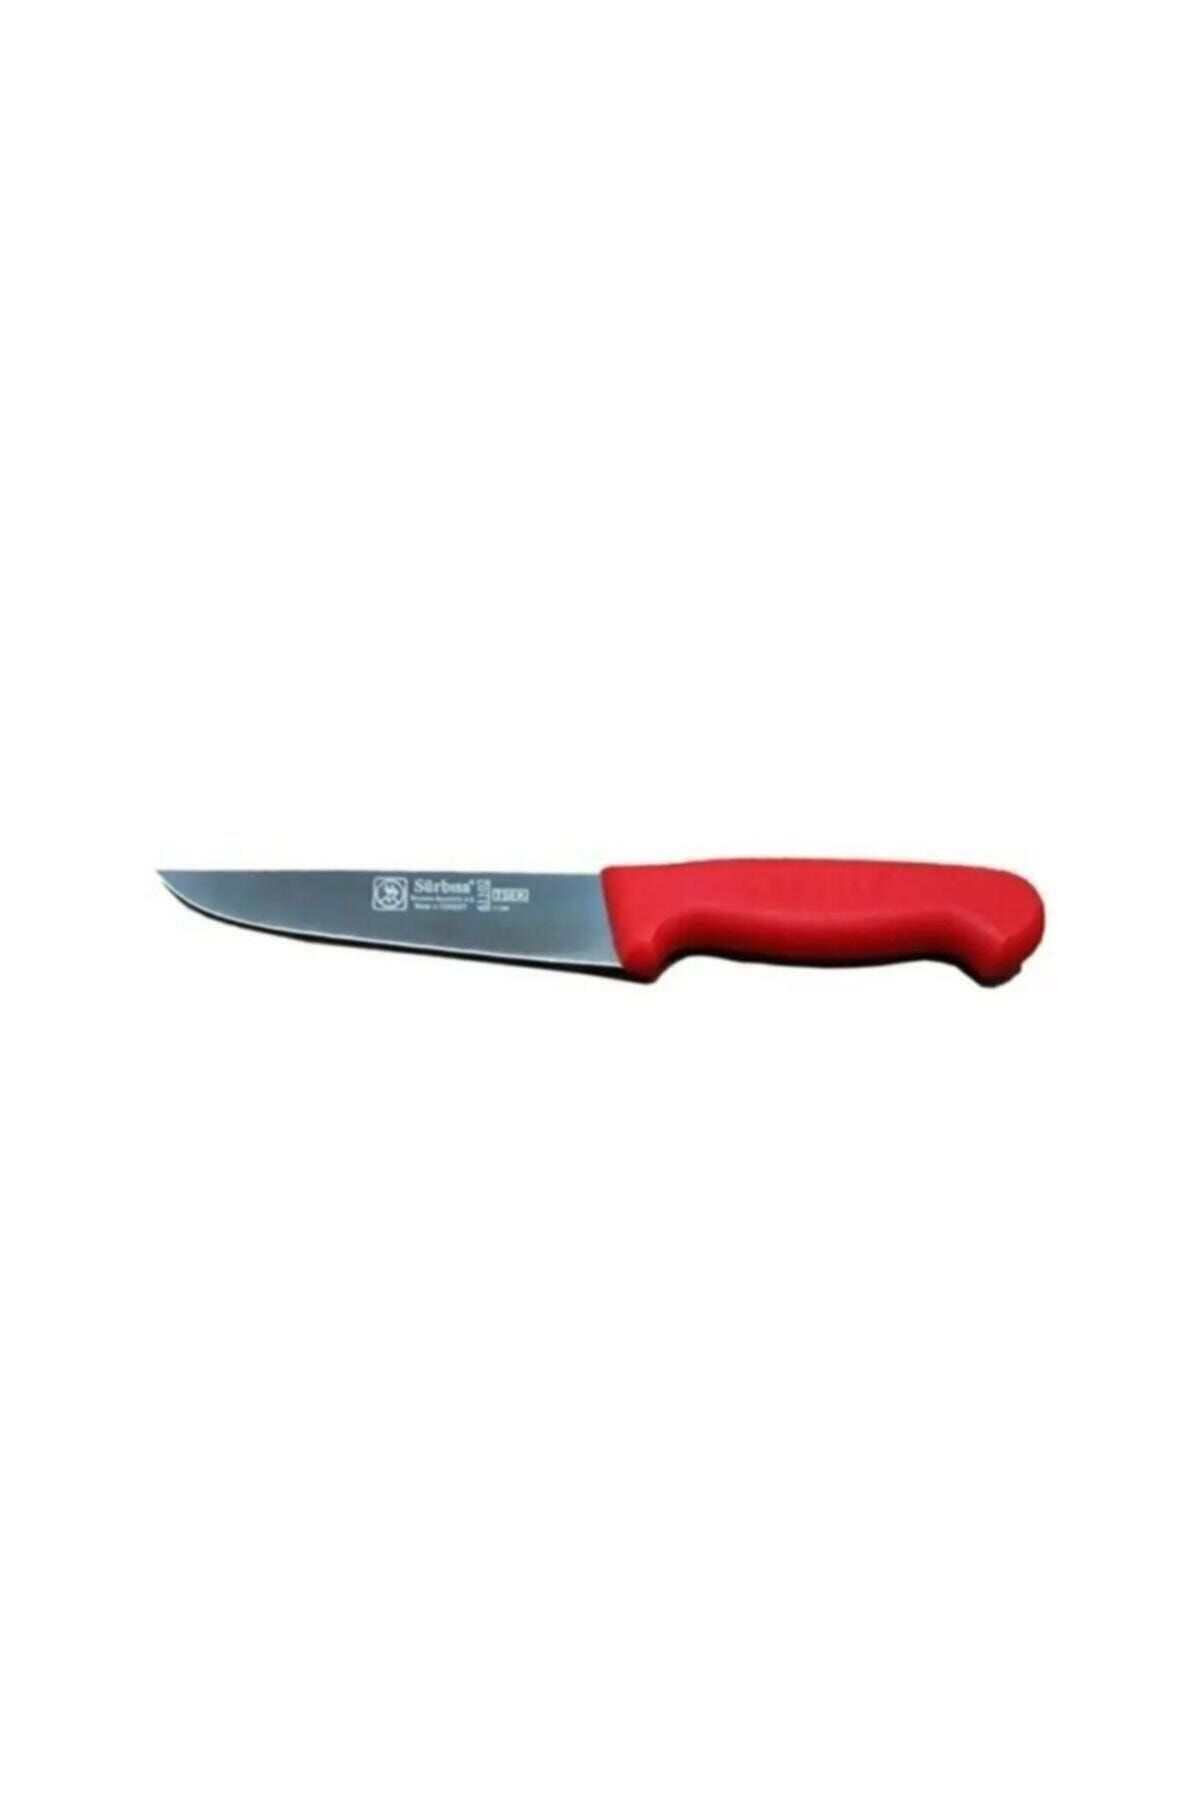 Sürbisa Sürmene Sürbısa 61102 Kırmızı Mutfak Bıçağı